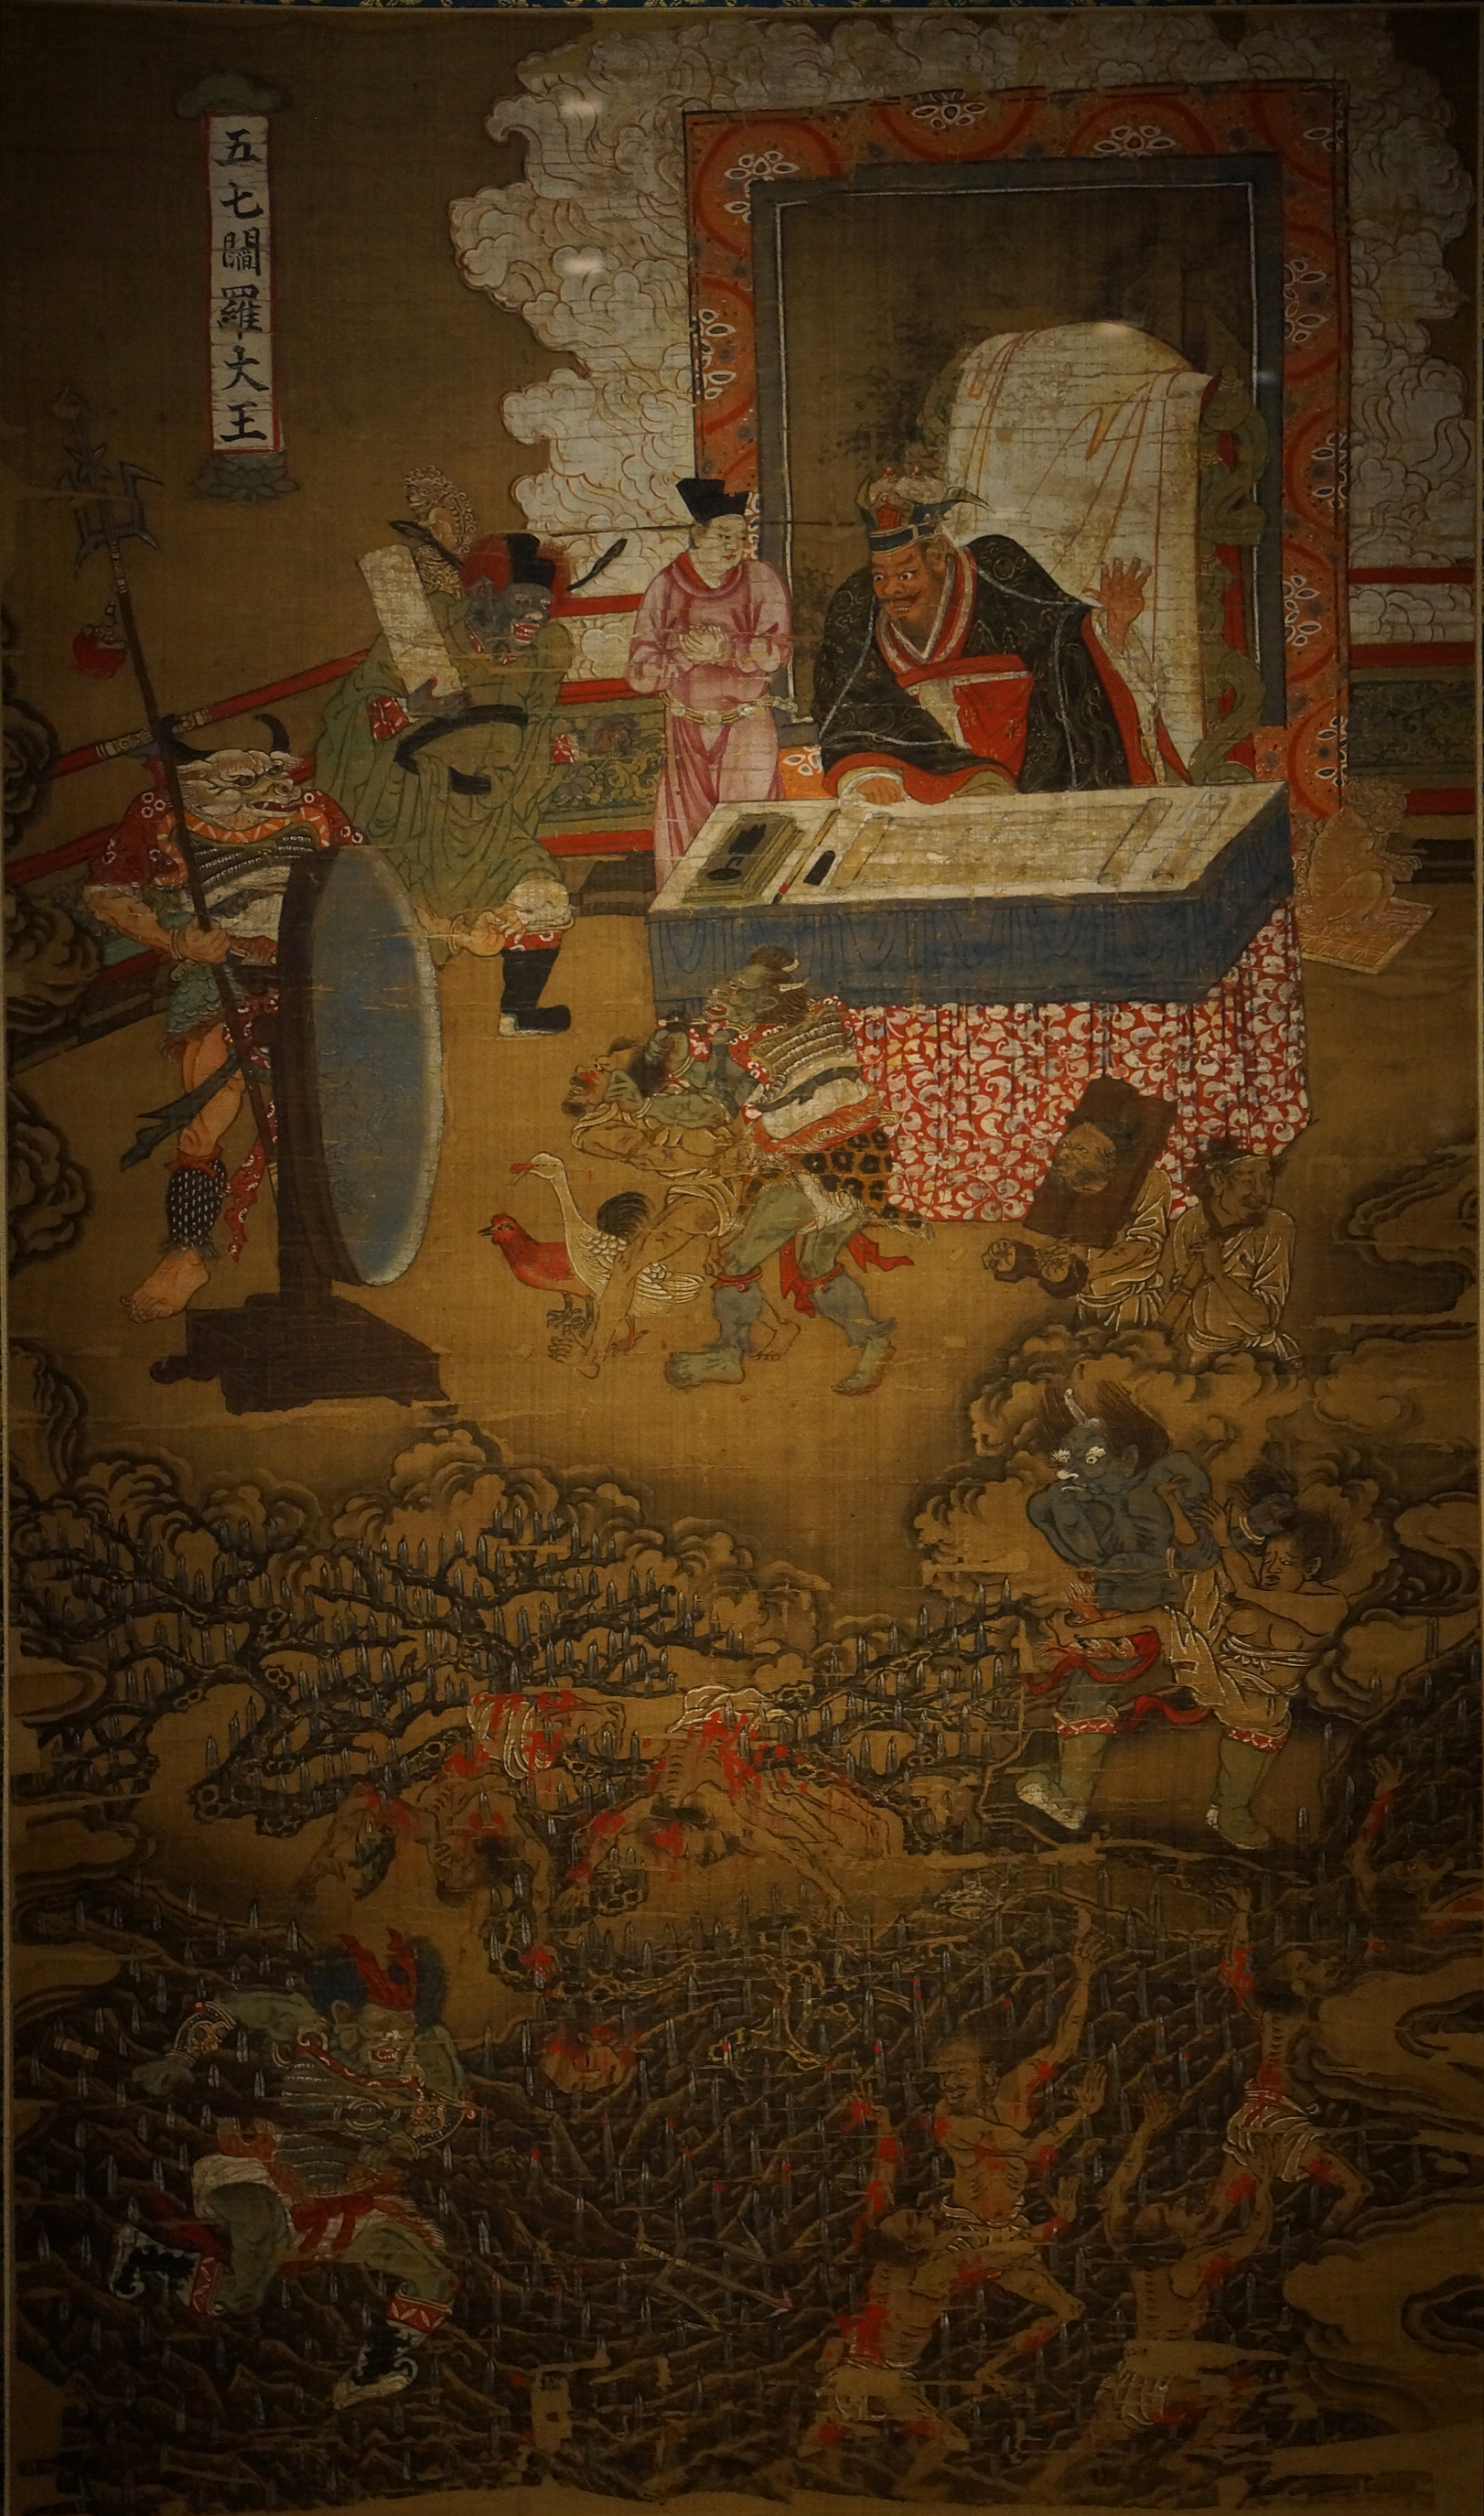 시왕도 중 제5염라대왕, 원, 14세기, 일본 나라국립박물관 소장 